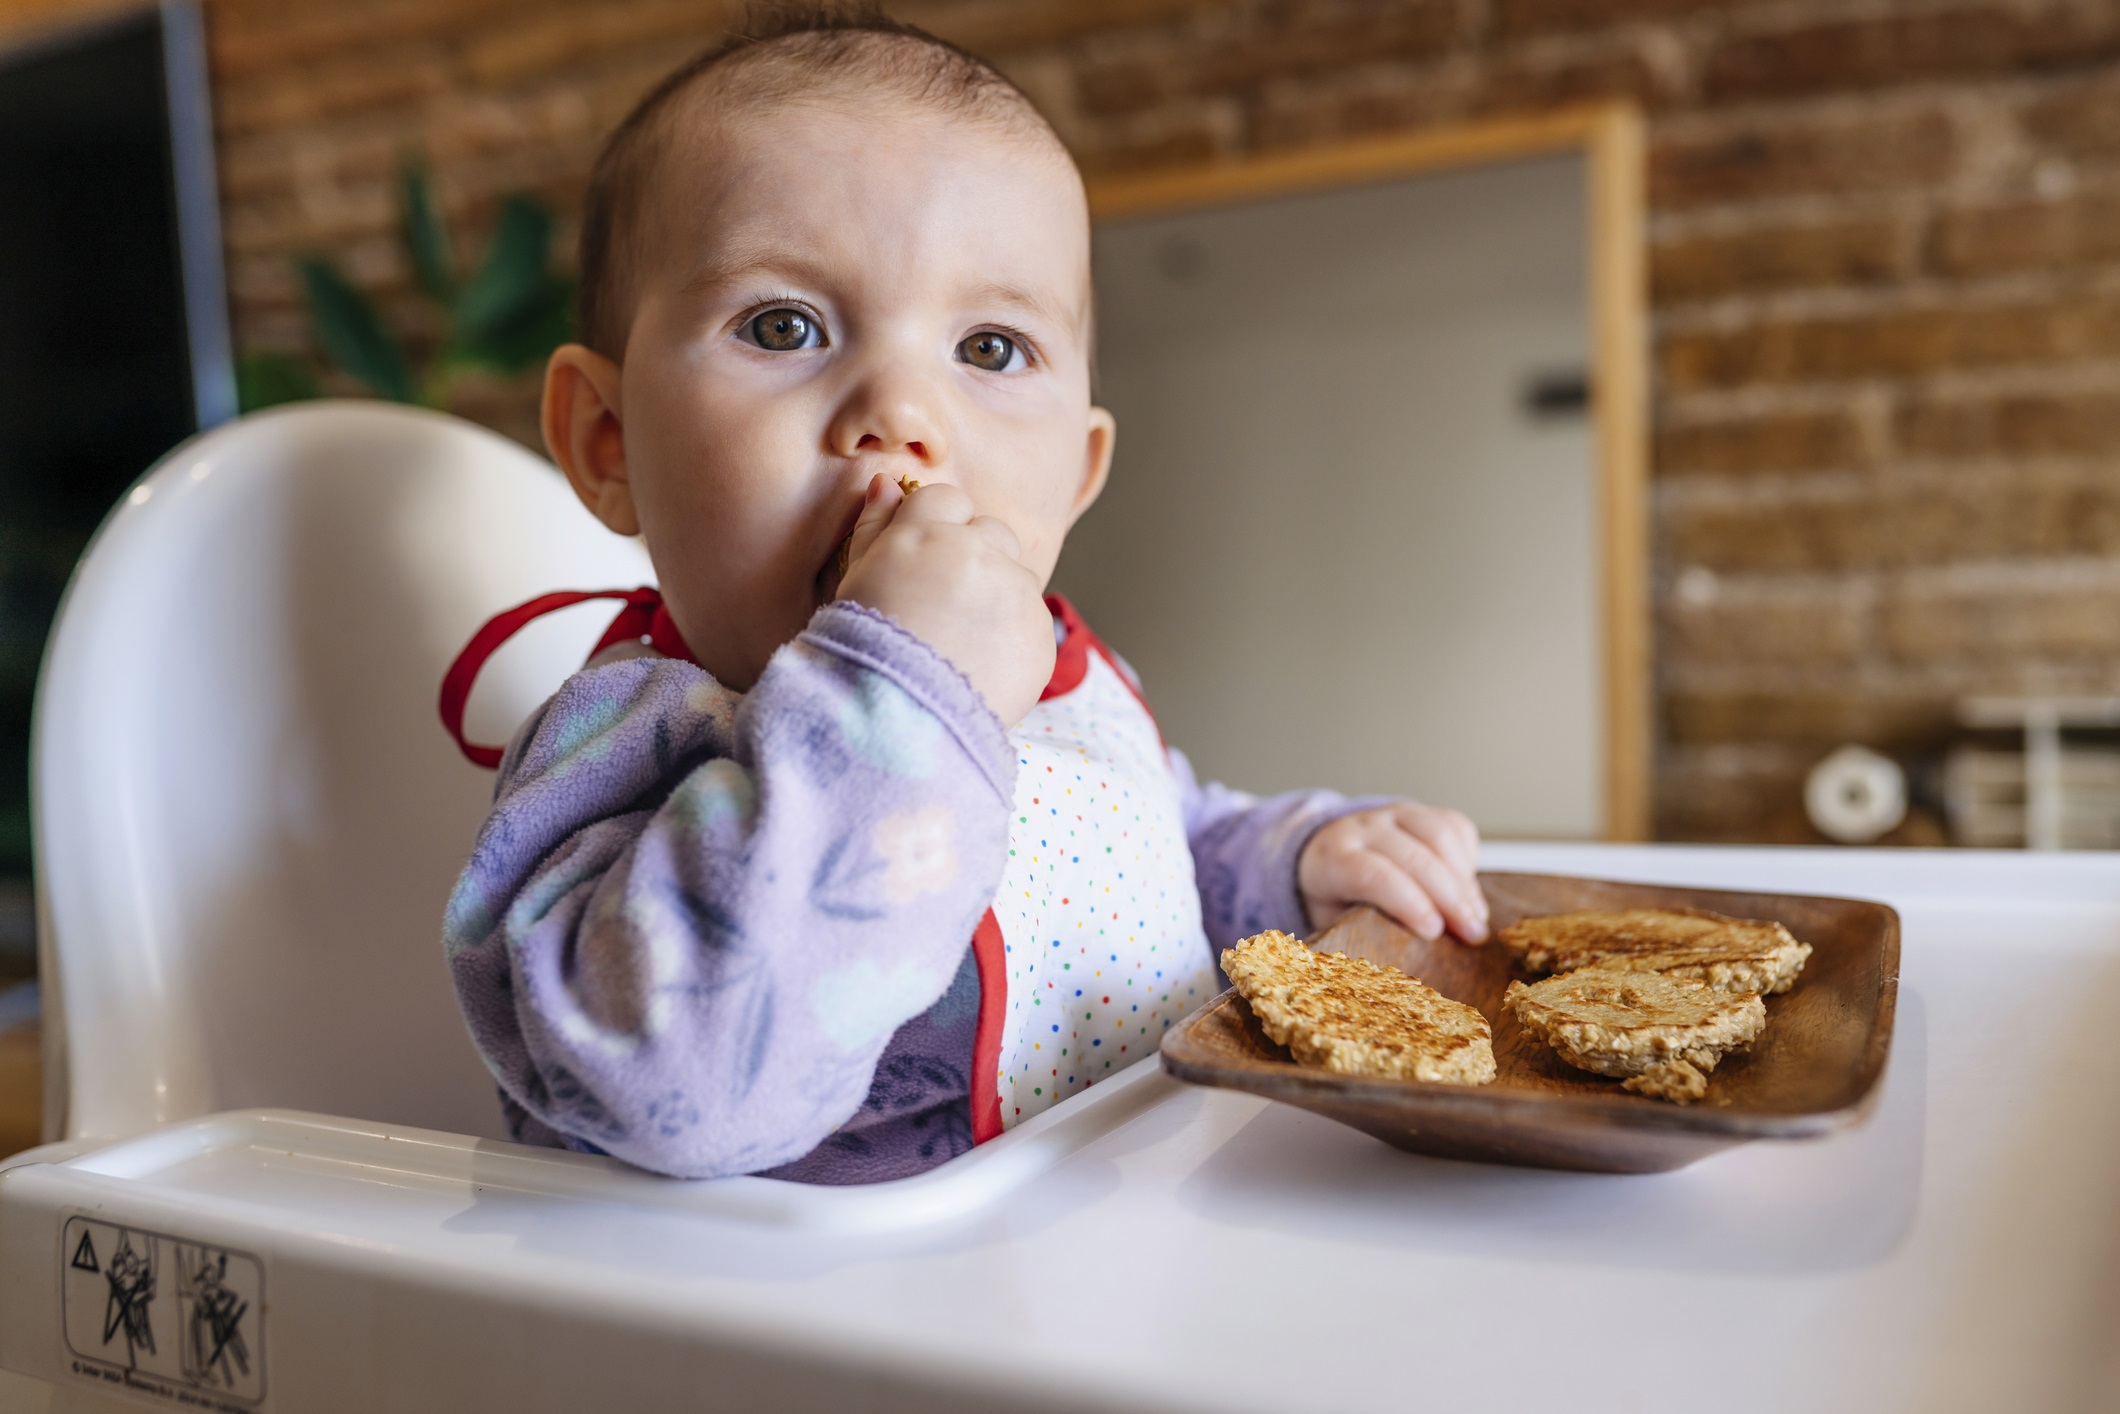 Фото №2 - Детские вопросы: почему называется завтрак, если мы едим сегодня